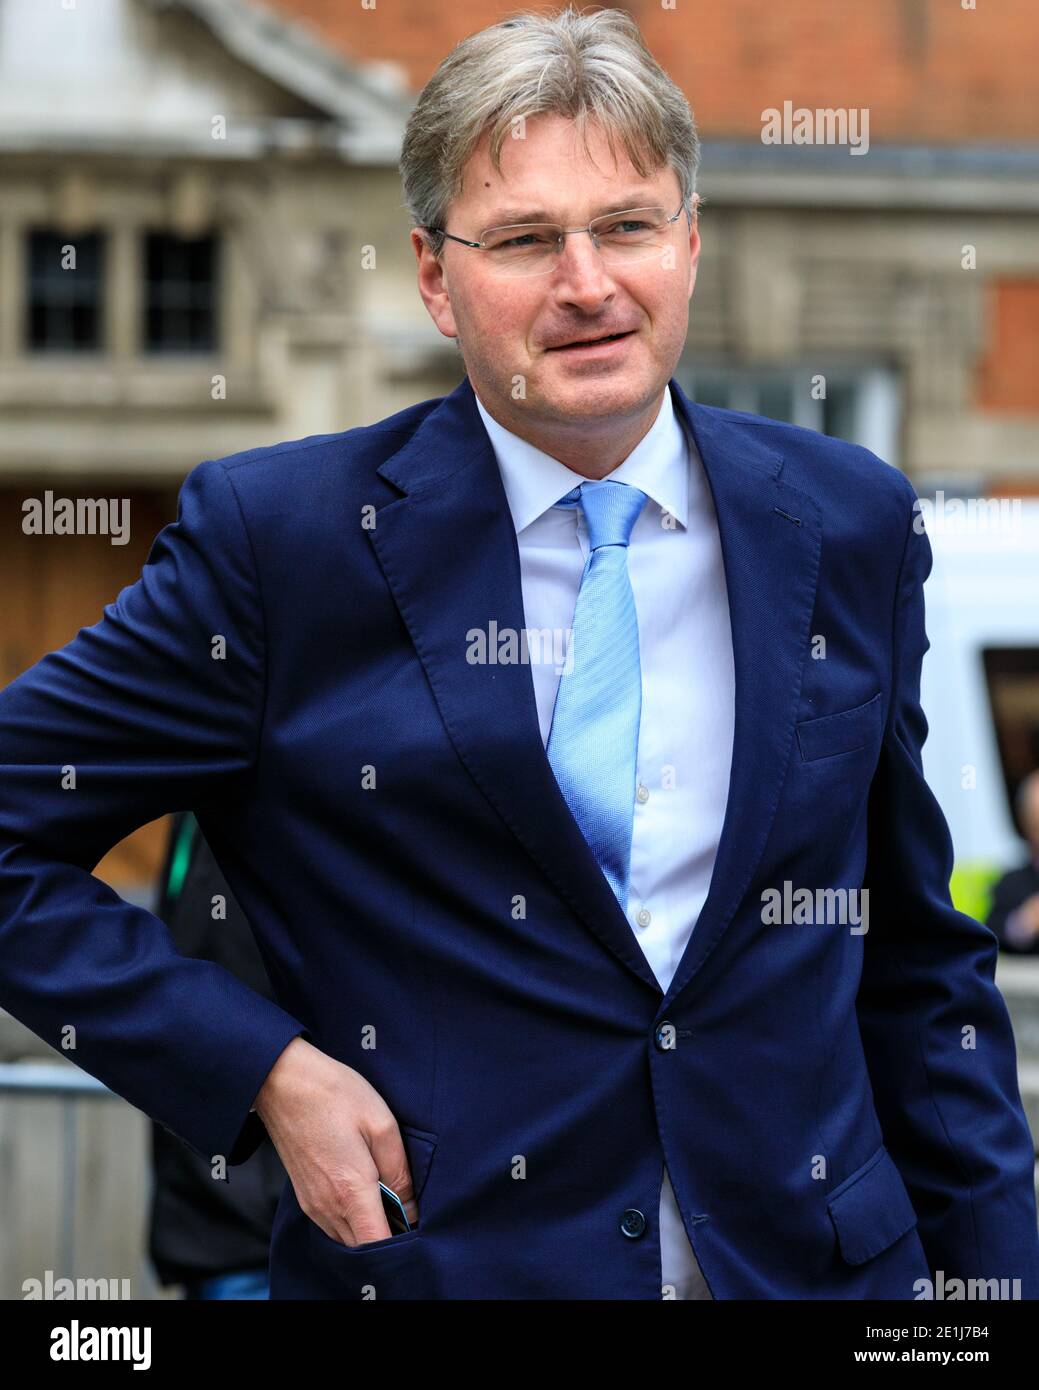 Daniel Kawczynski, Abgeordneter der Konservativen Partei für Shrewsbury und Atcham und prominenter Brexiteer, in Westminster, London, Großbritannien Stockfoto